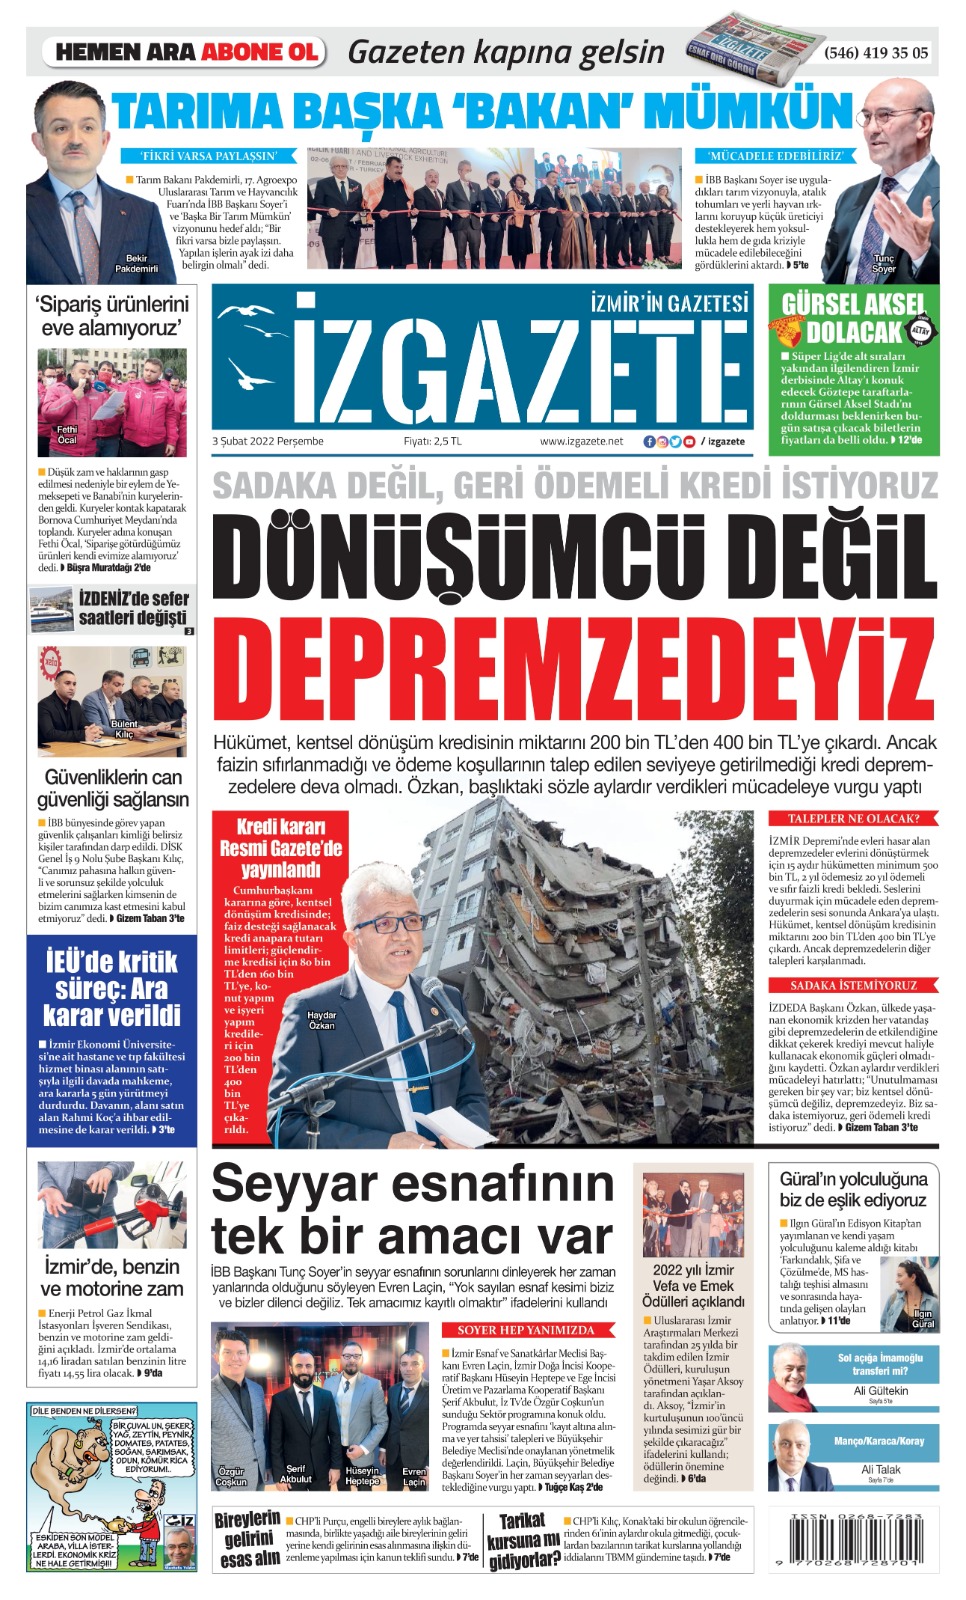 İz Gazete - İzmir'in Gazetesi - 03.02.2022 Manşeti